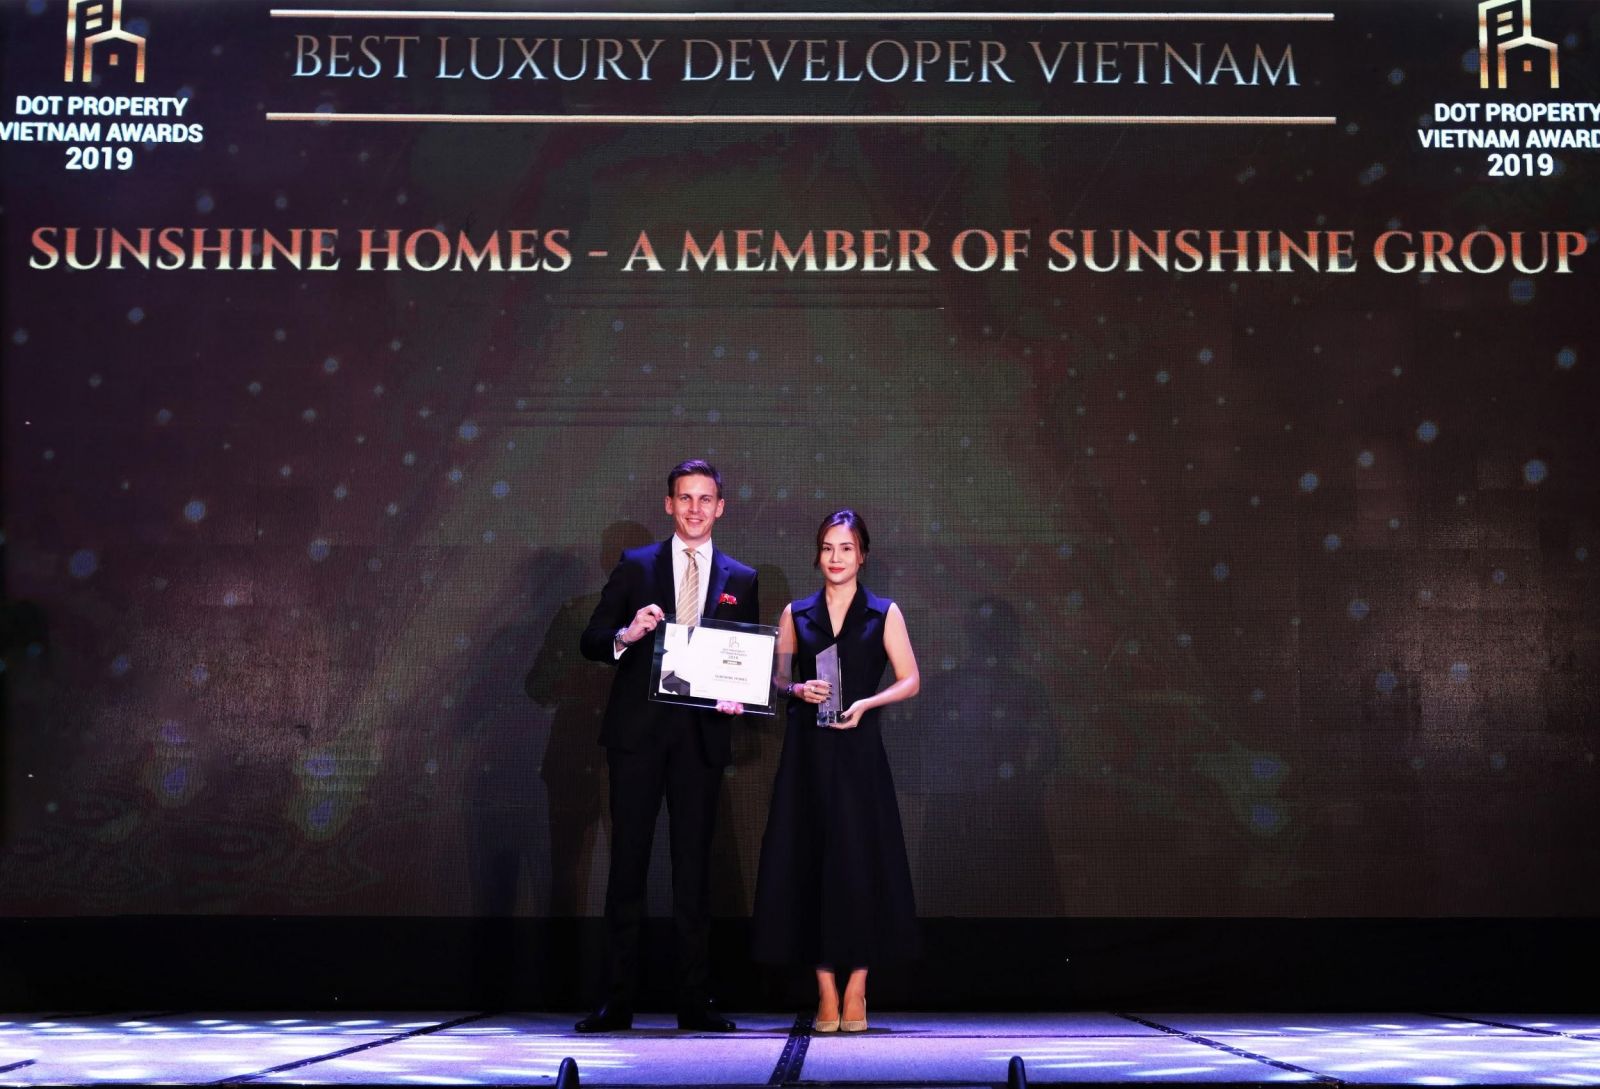 Bà Đỗ Thị Hồng Nhung - Tổng Giám Đốc Tập đoàn Sunshine Sài Gòn nhận Giải thưởng Nhà phát triển dự án cao cấp tốt nhất 2019 cho thương hiệu Sunshine Home.